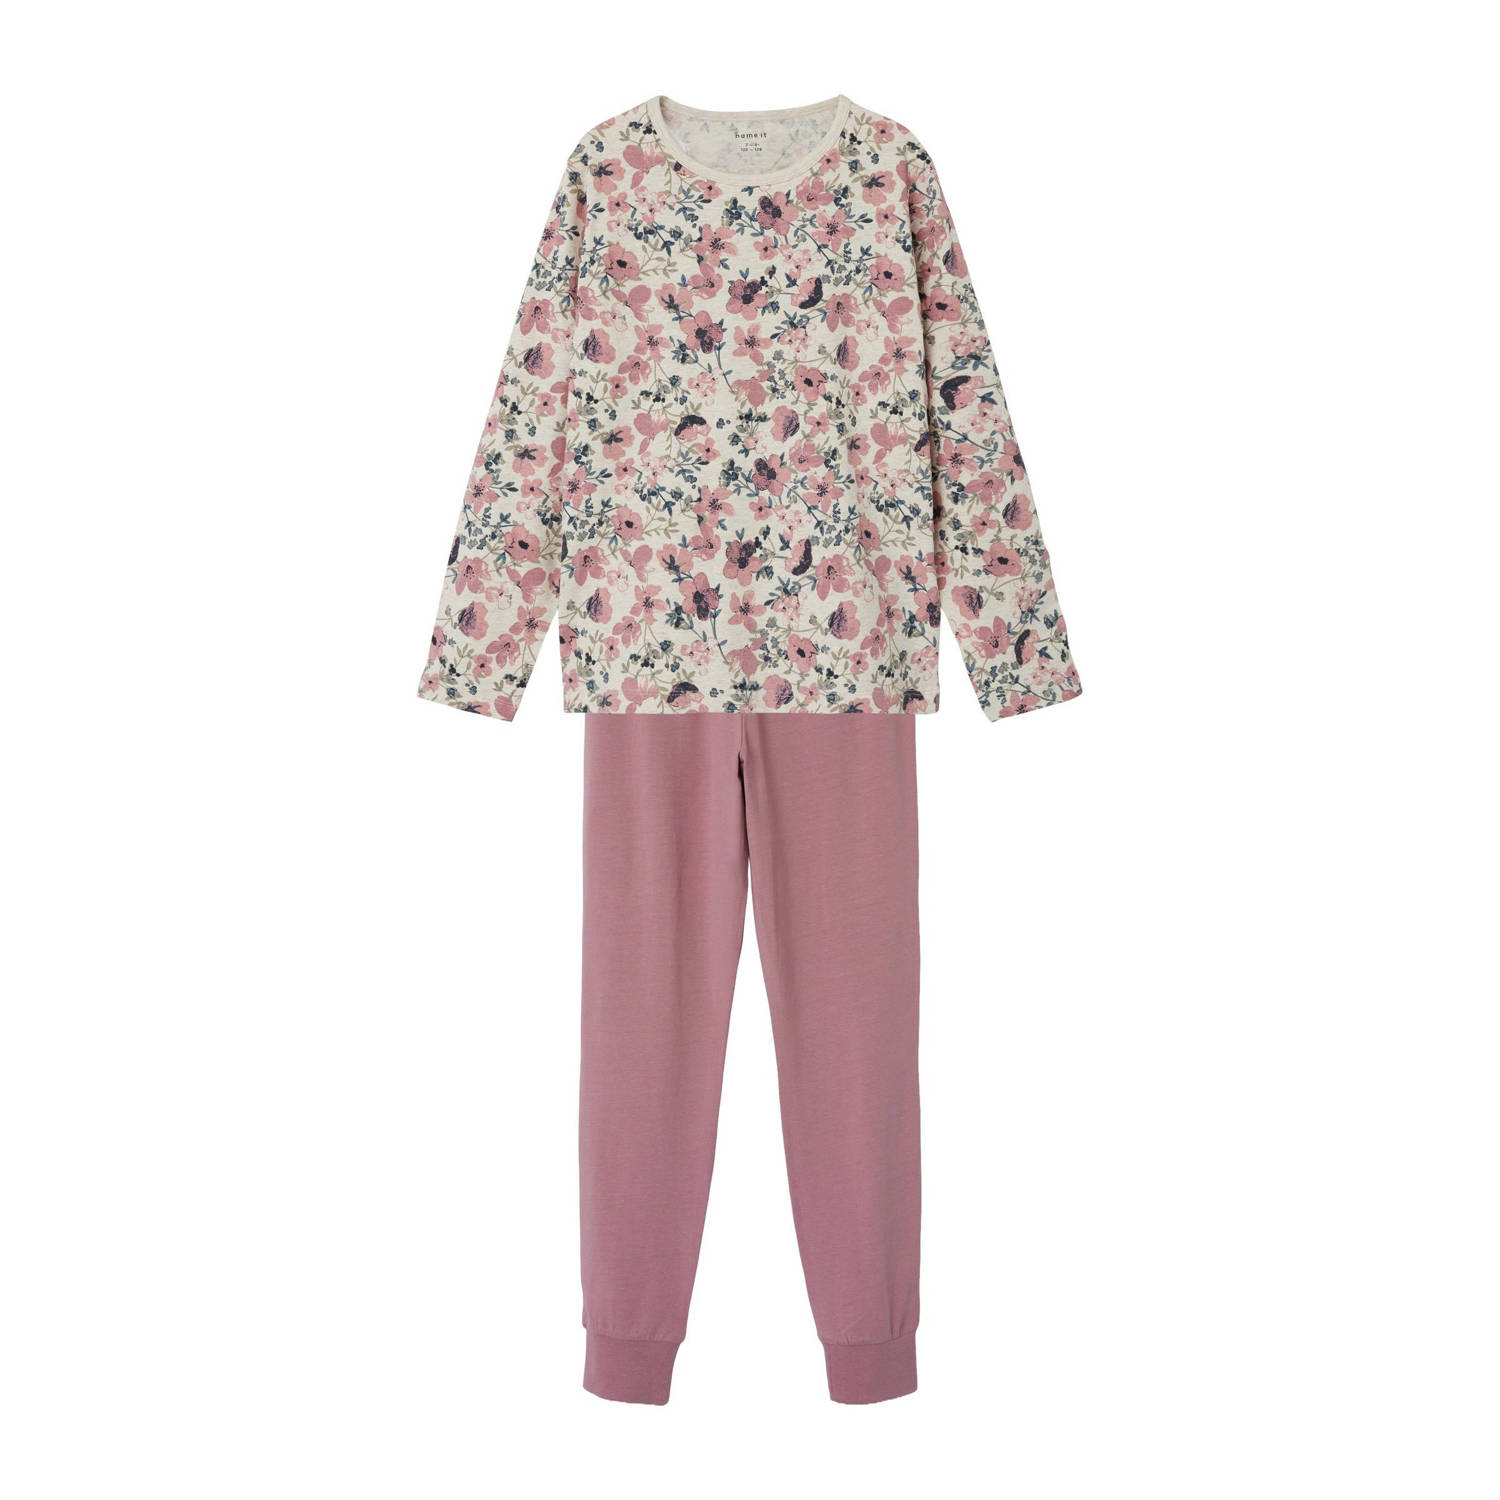 Name it KIDS gebloemde pyjama roze ecru multi Meisjes Stretchkatoen Ronde hals 110 116